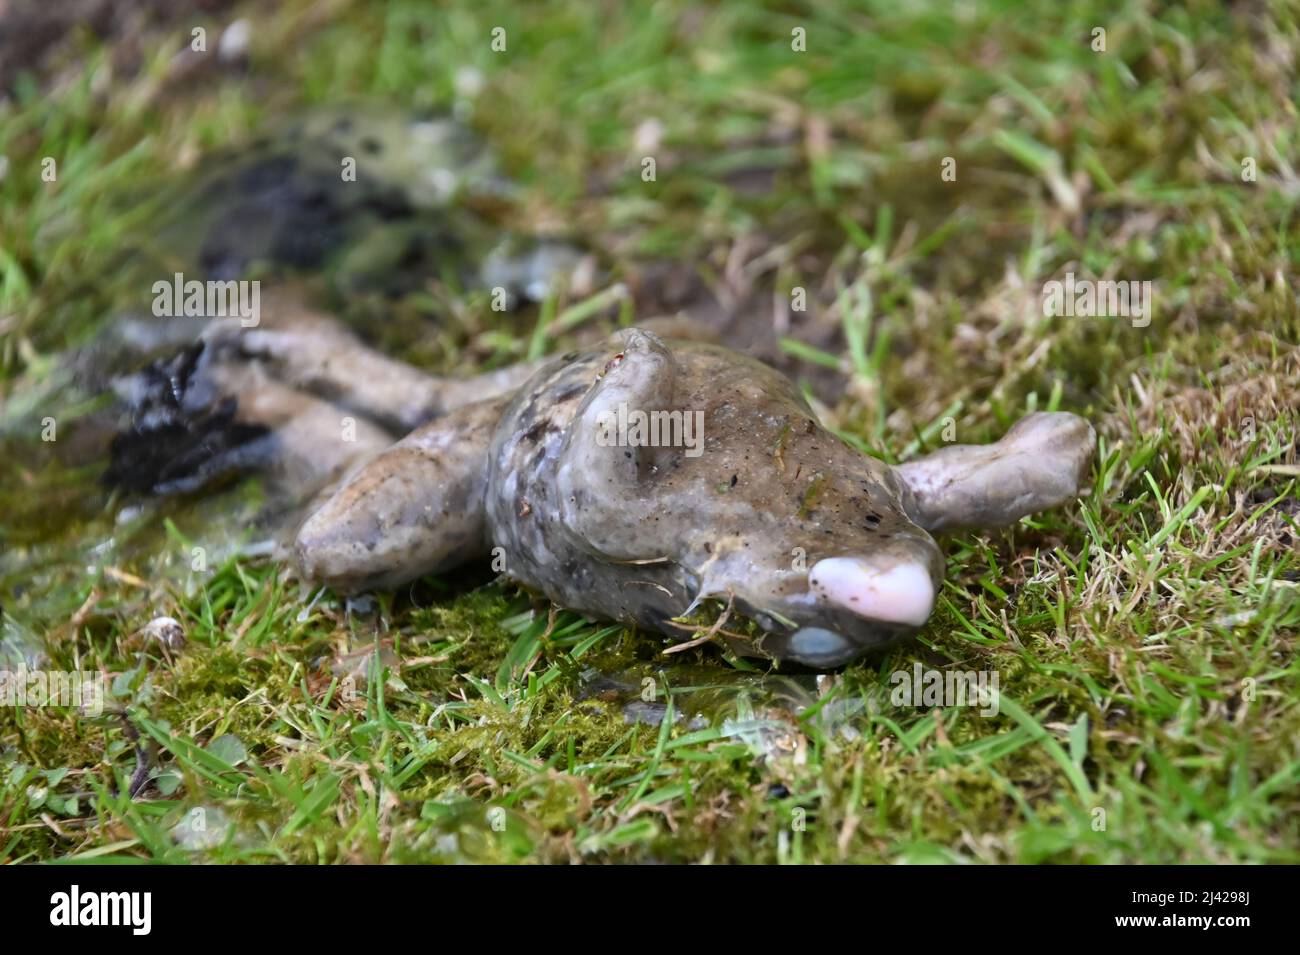 A dead common garden frog, rana temporaria, lying of the grass, dead Stock Photo